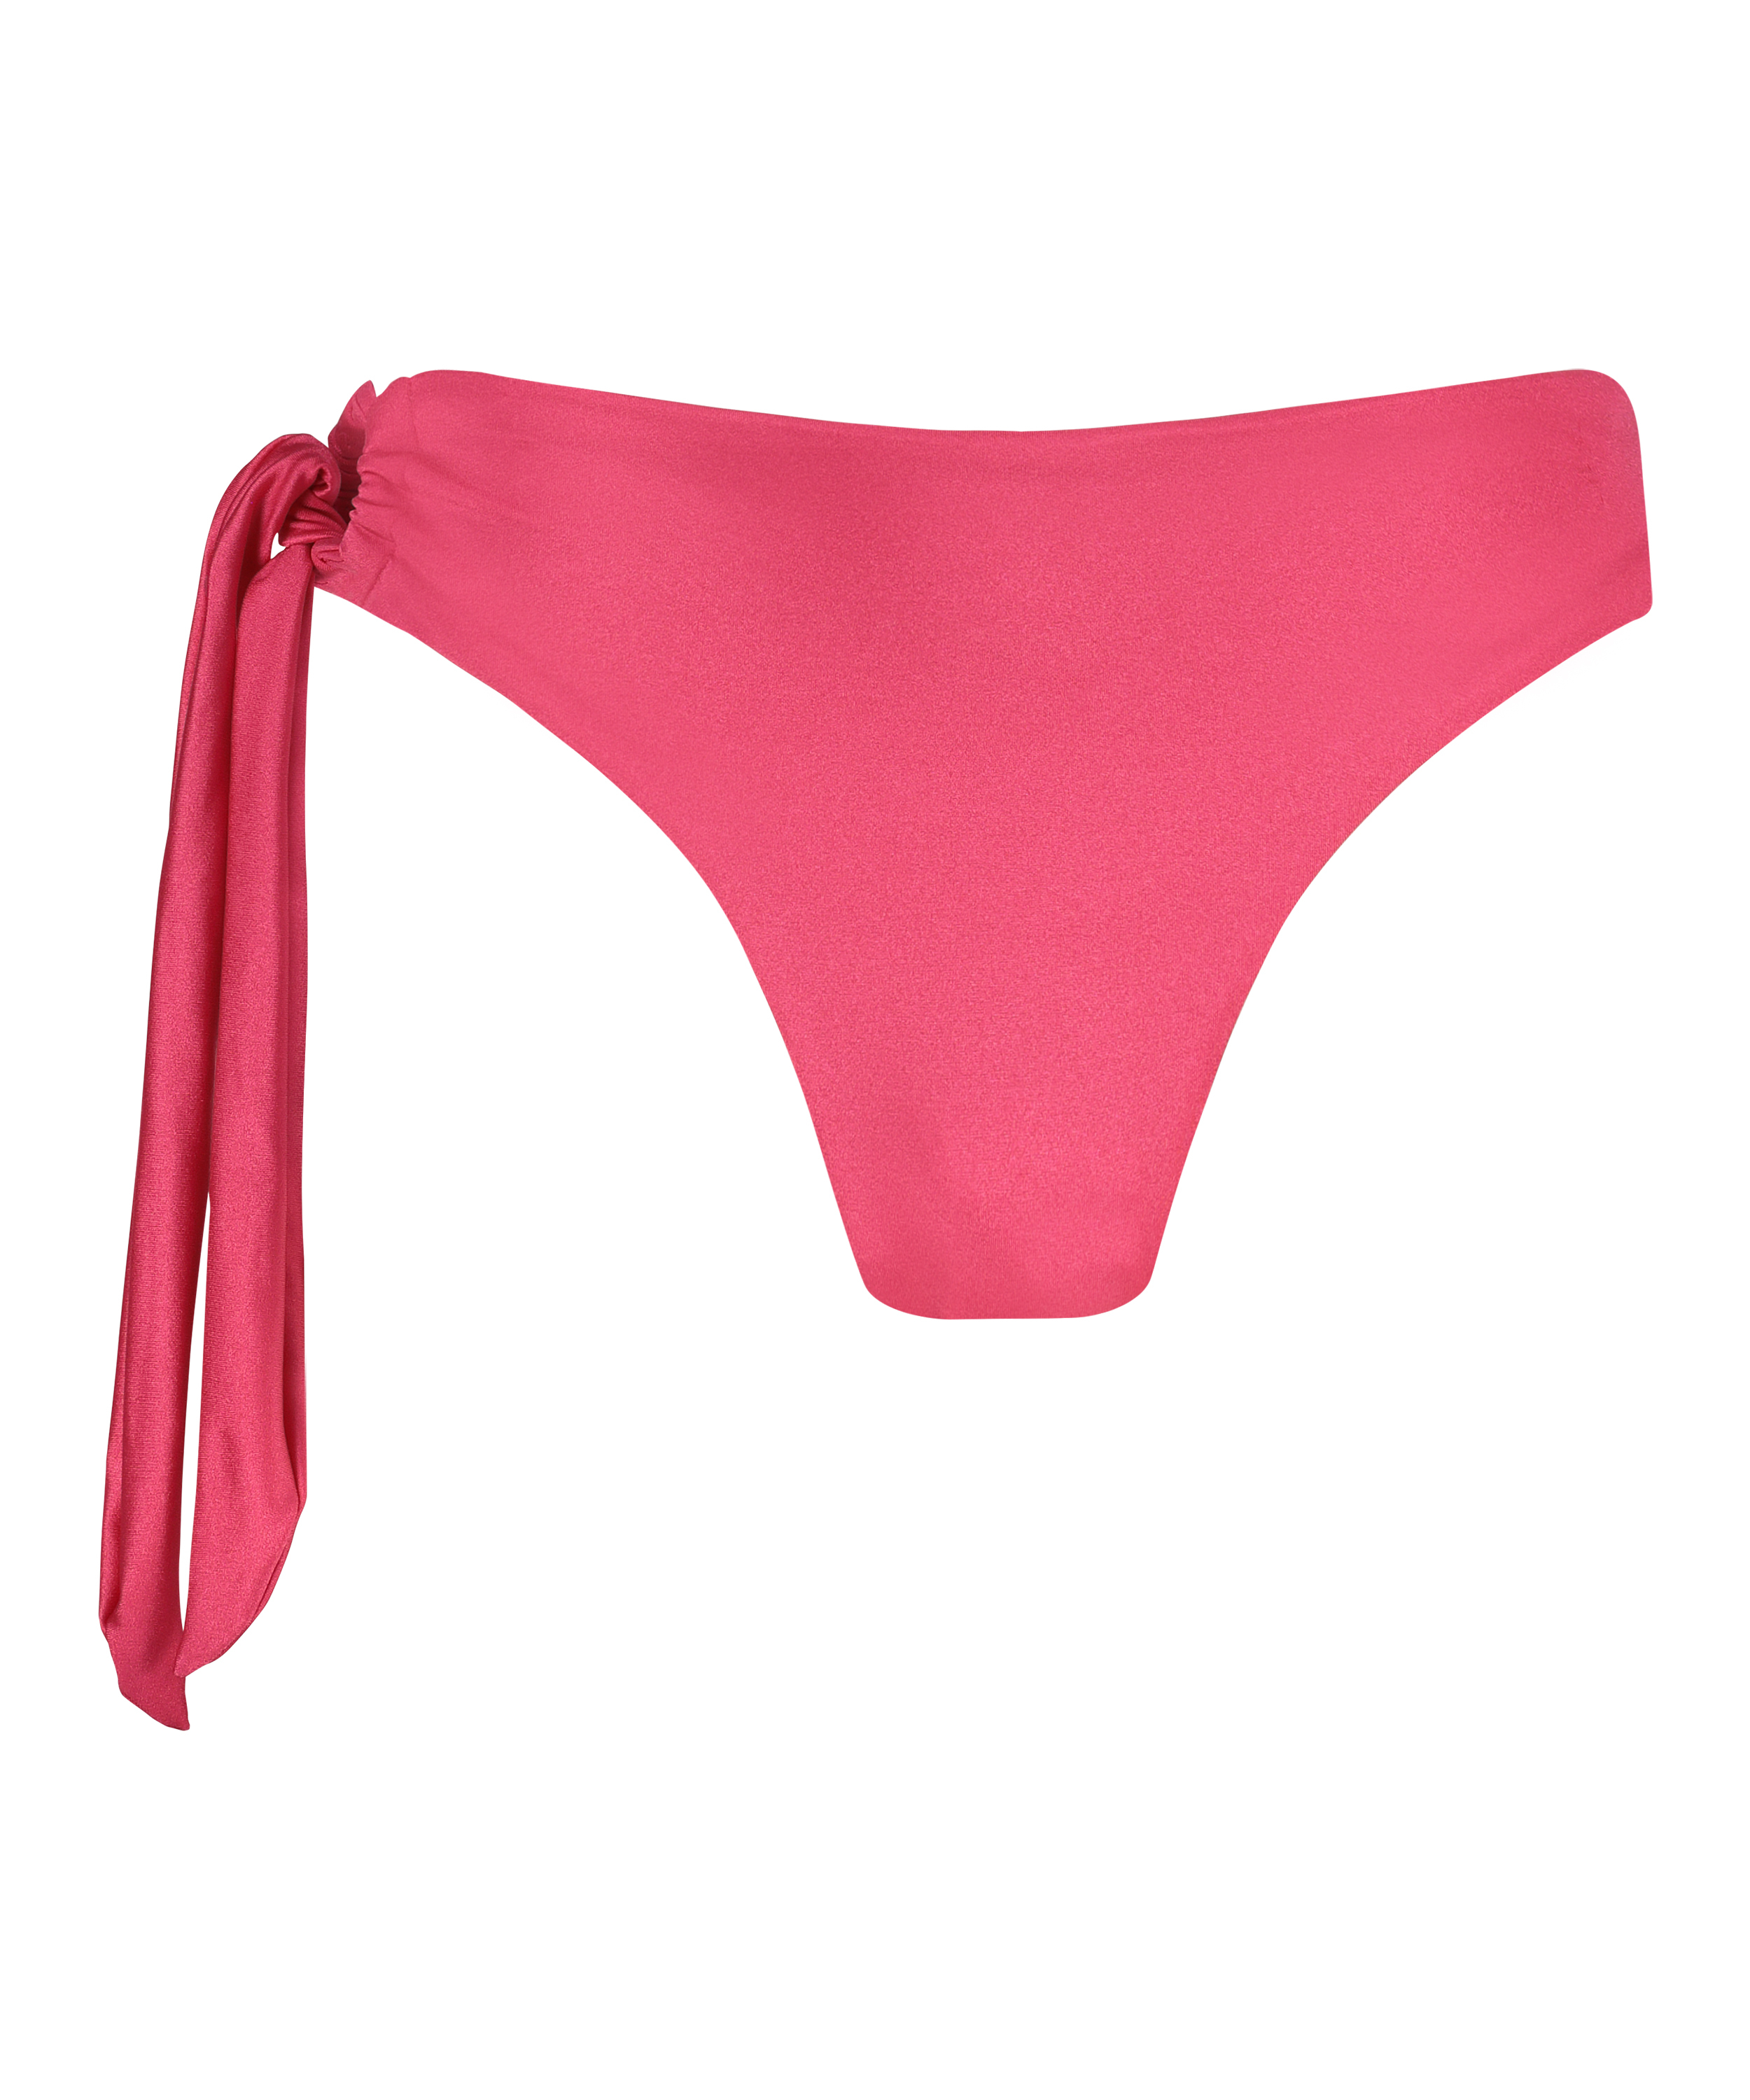 Grenada Bikini Bottoms, Pink, main